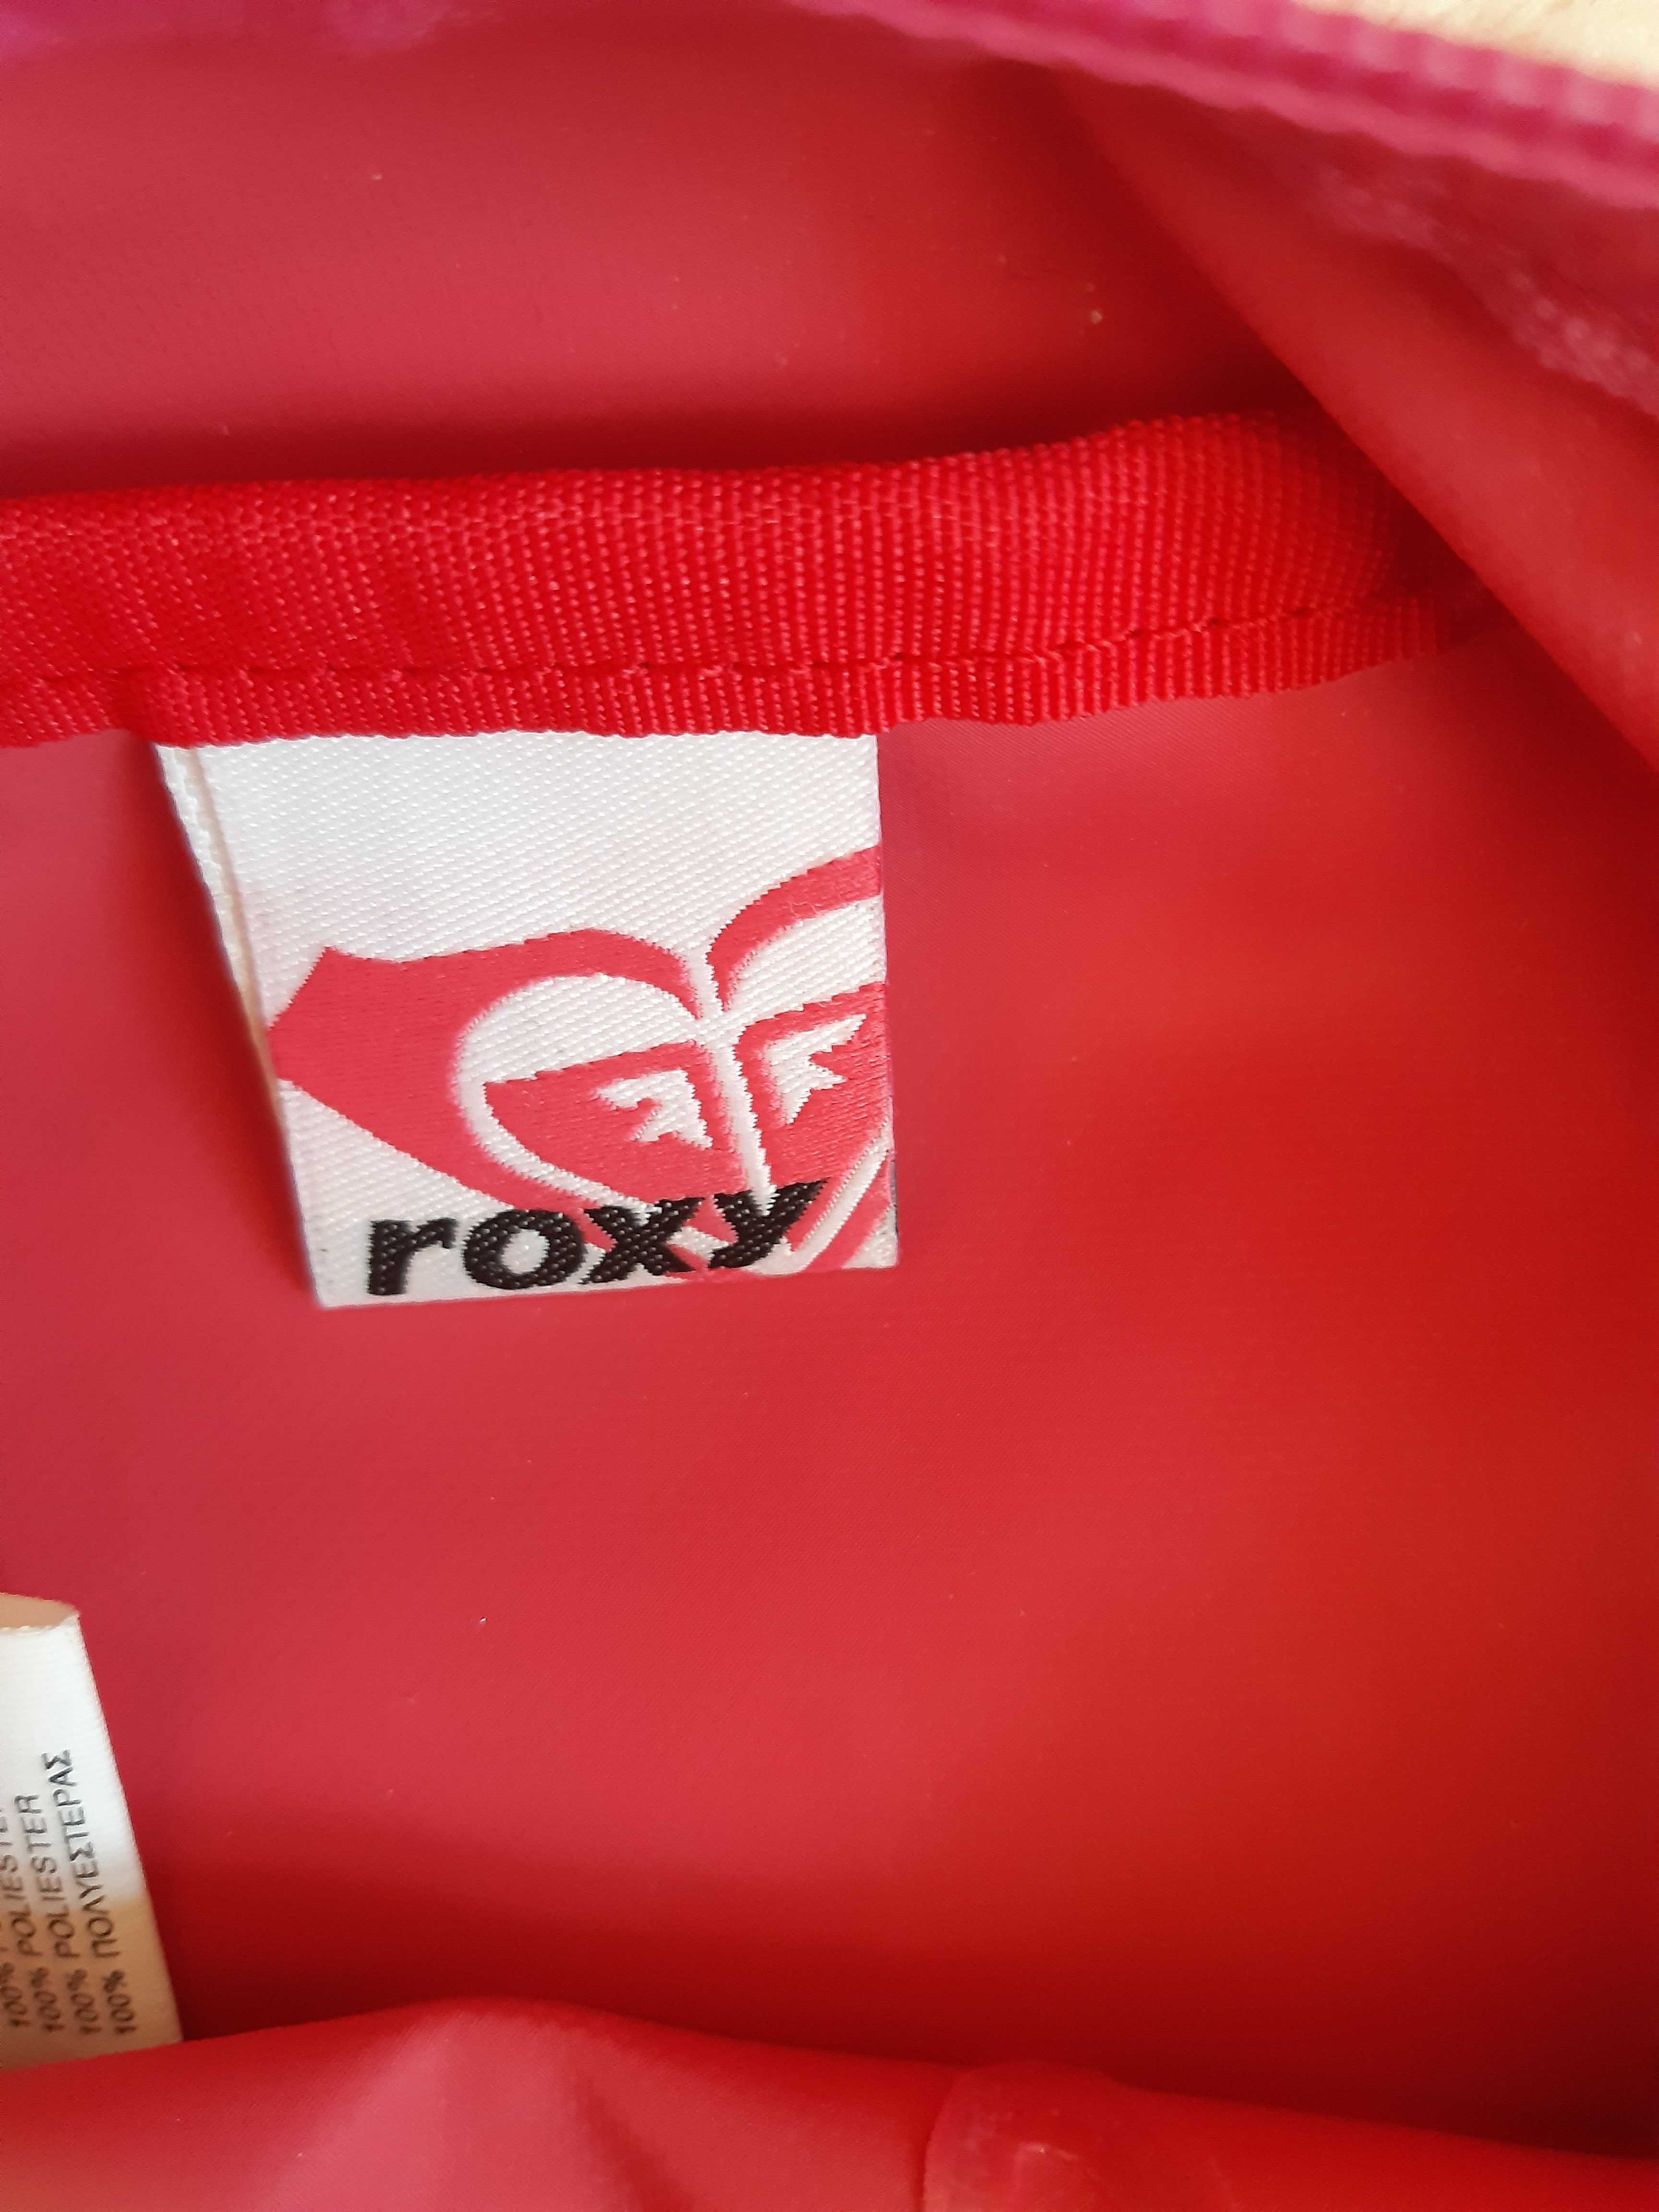 Sportowa torebka/listonoszka Roxy